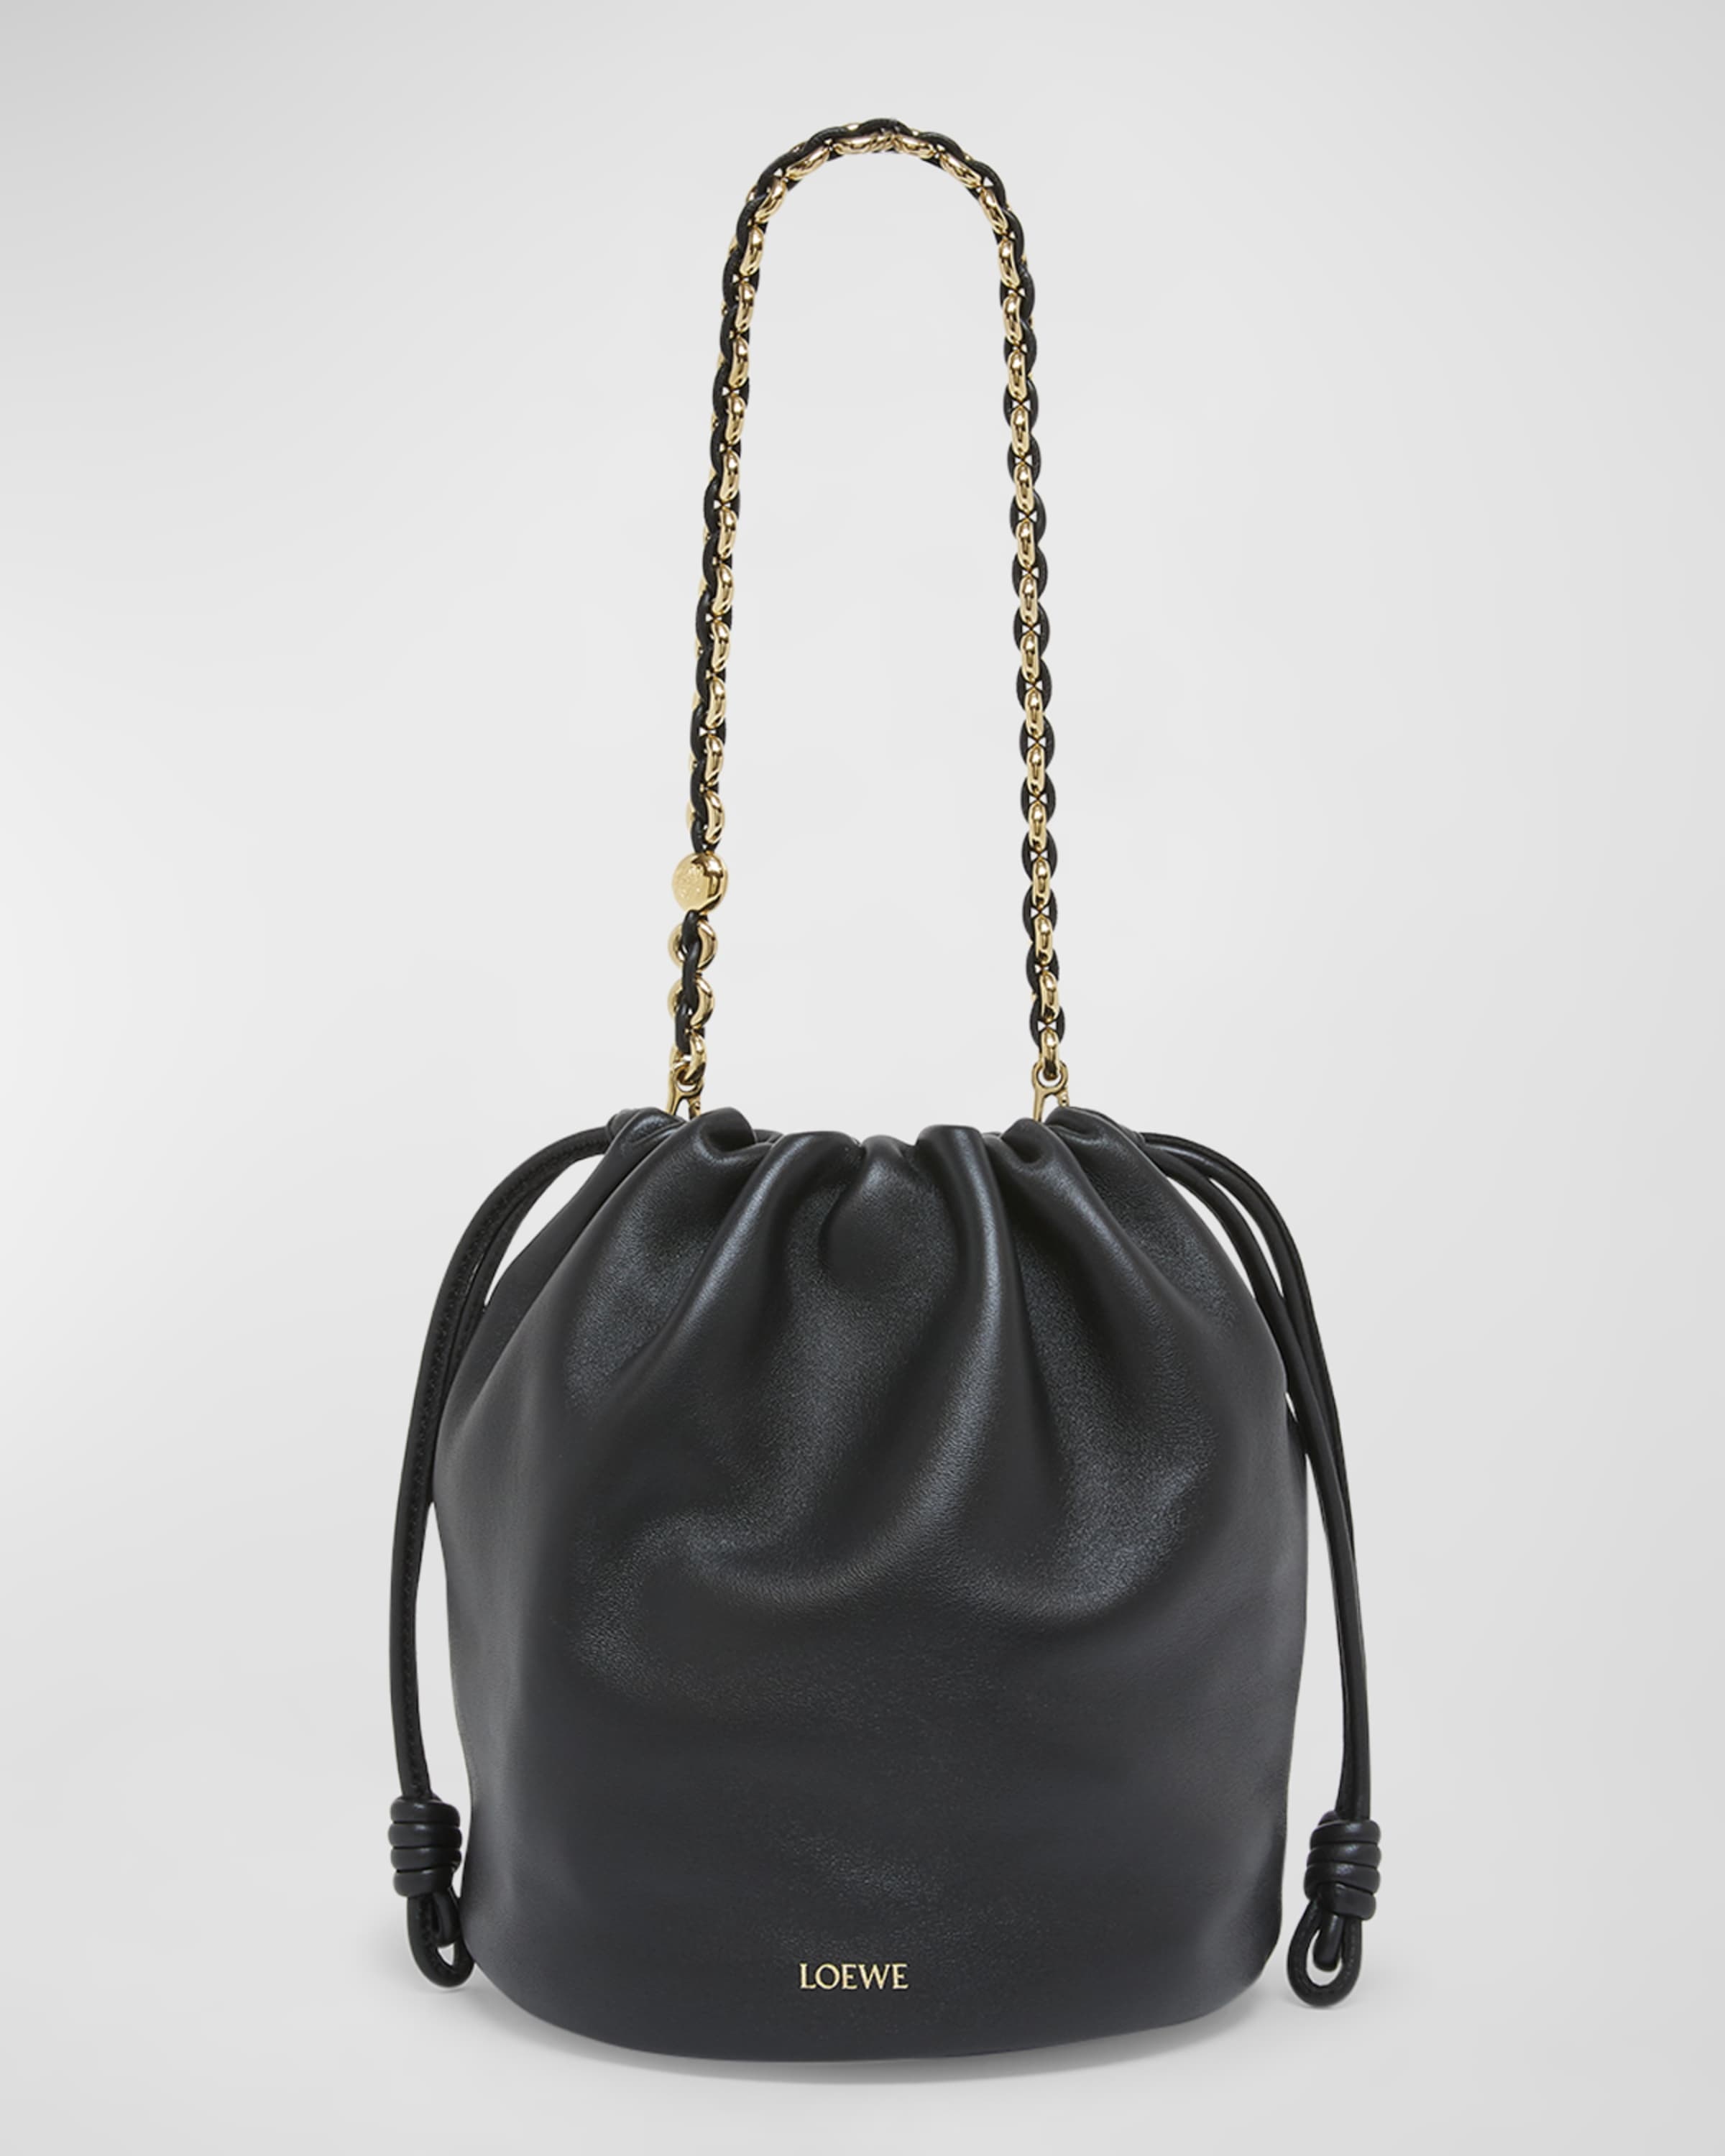 x Paula’s Ibiza Flamenco Bucket Bag in Napa Leather with Chain - 1